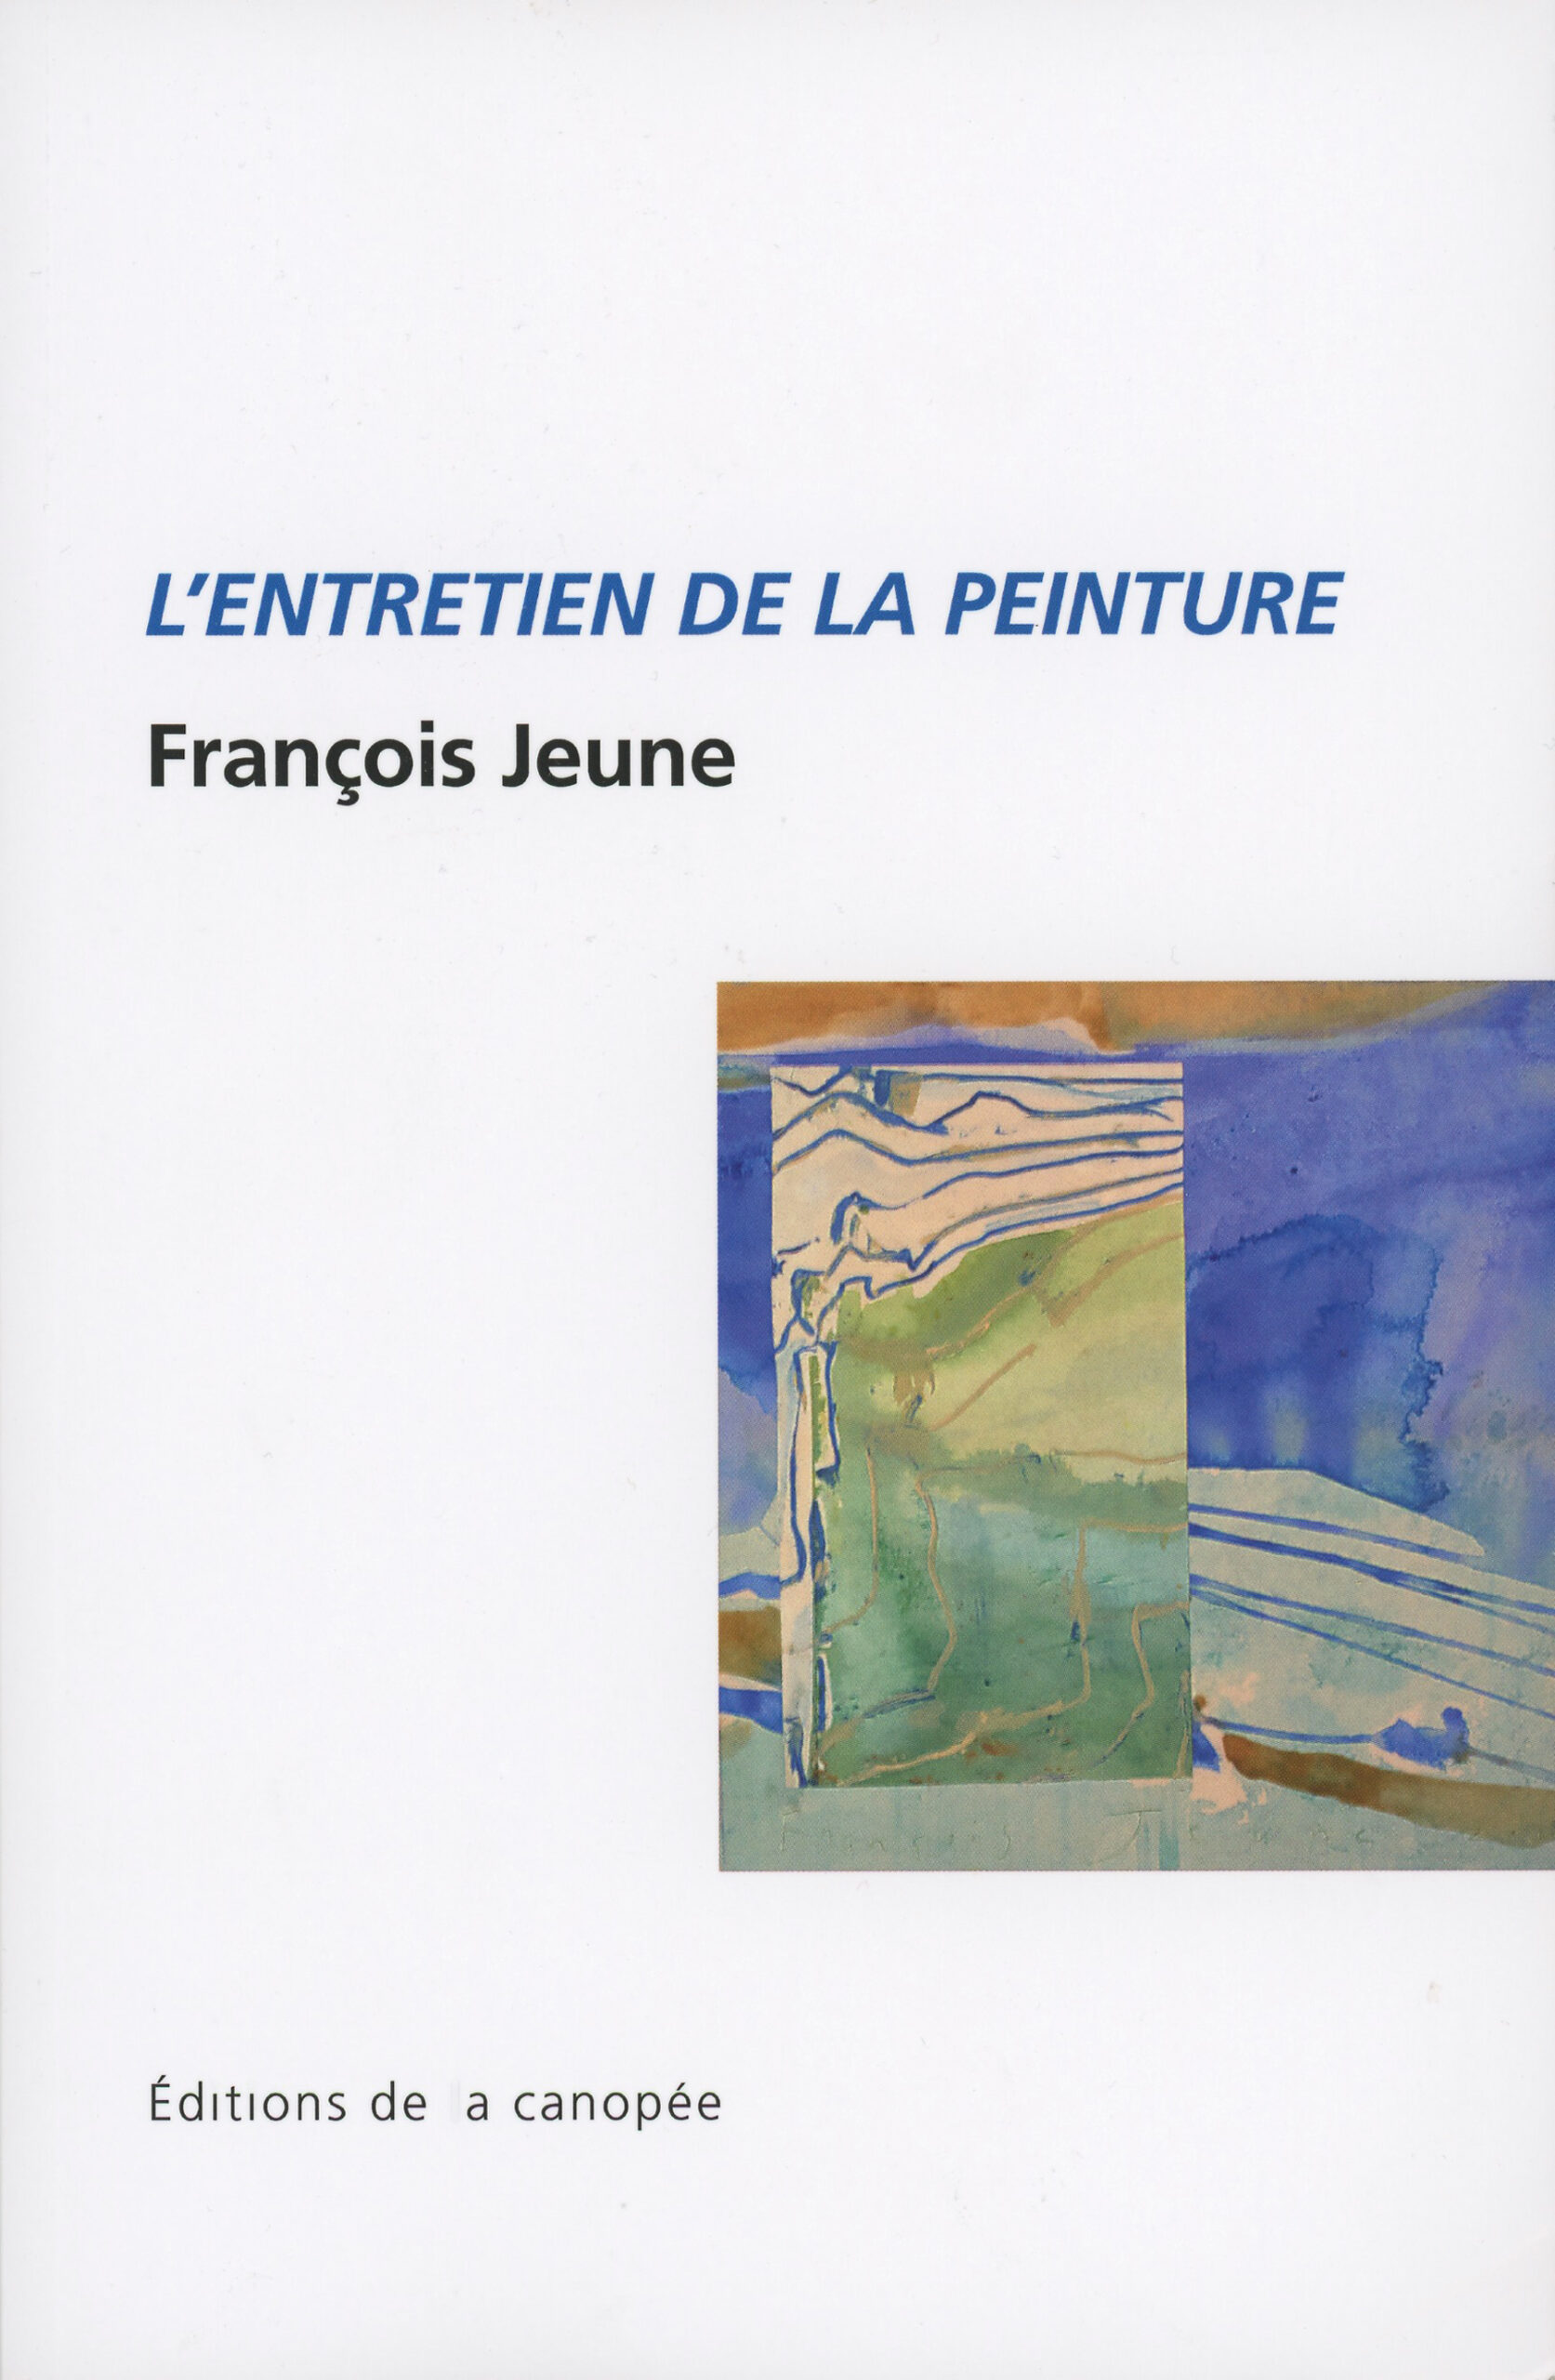 François Jeune. L'Entretien de la peinture